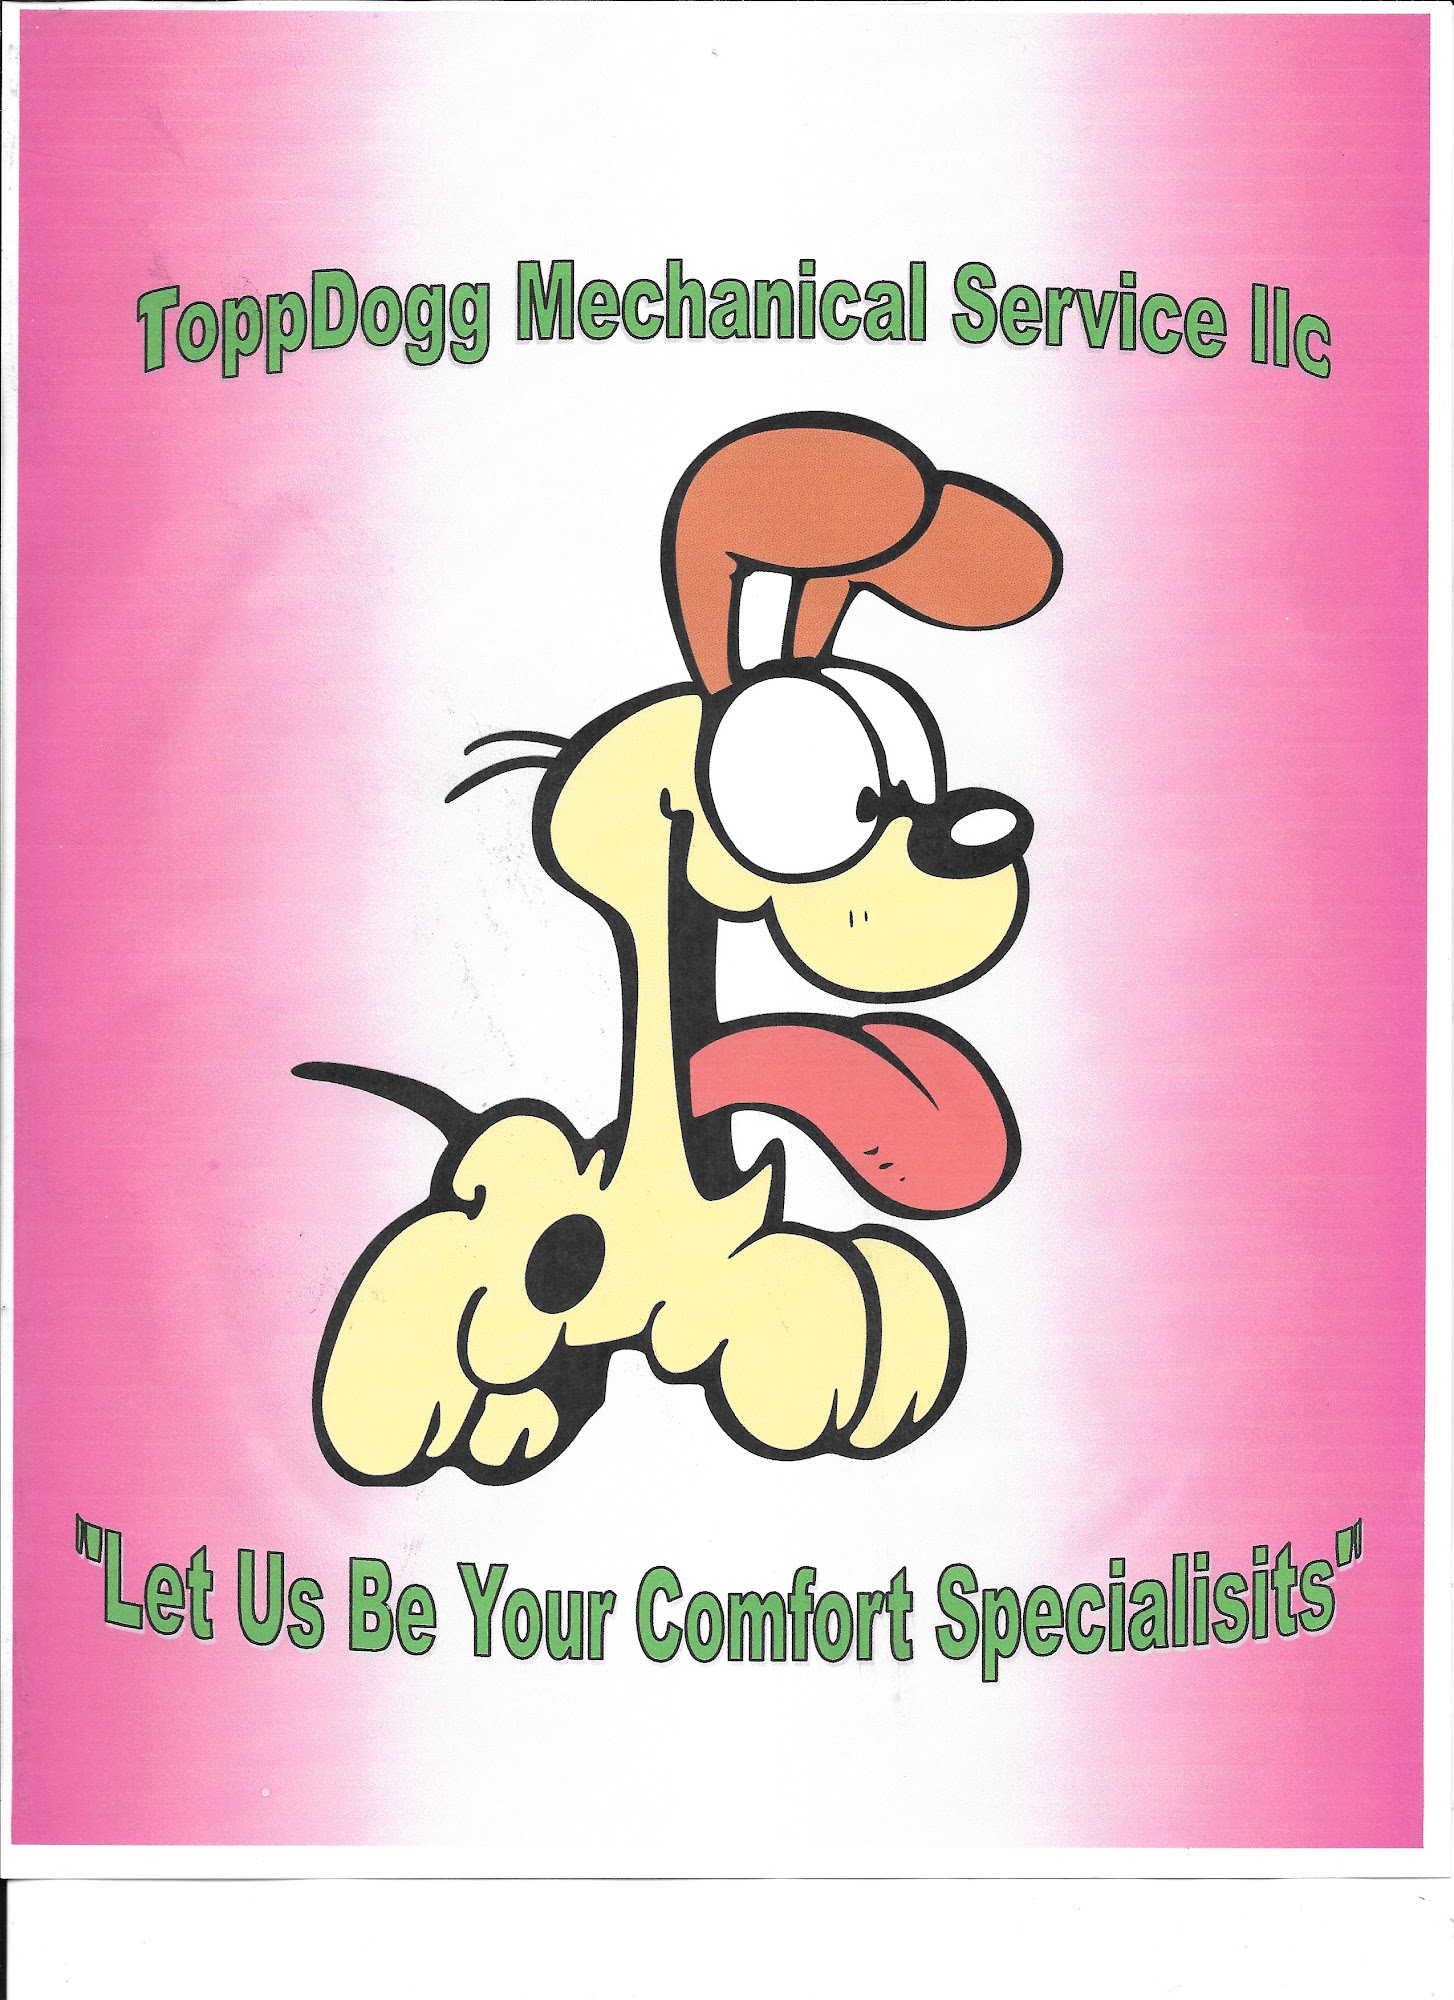 ToppDogg Mechanical Service llc